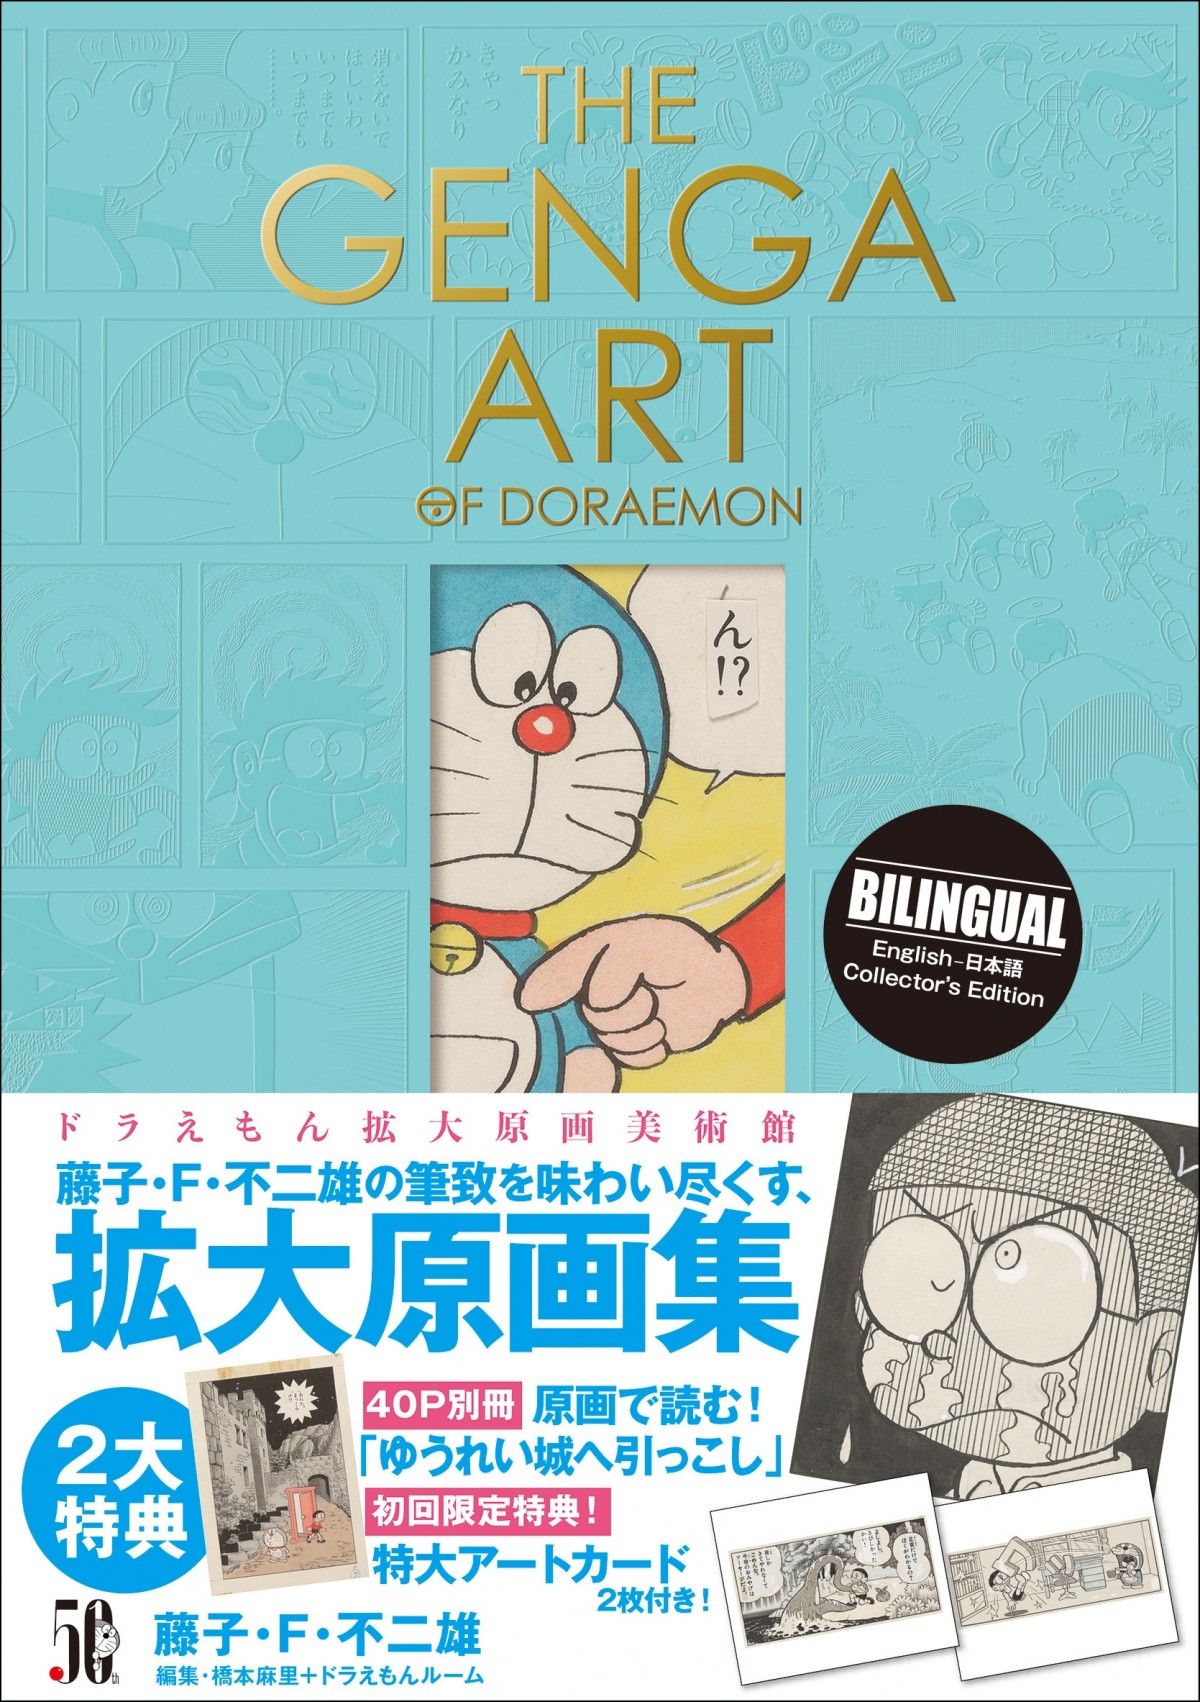 『ドラえもん』初の本格美術画集「THE GENGA ART OF DORAEMON」4月7日発売